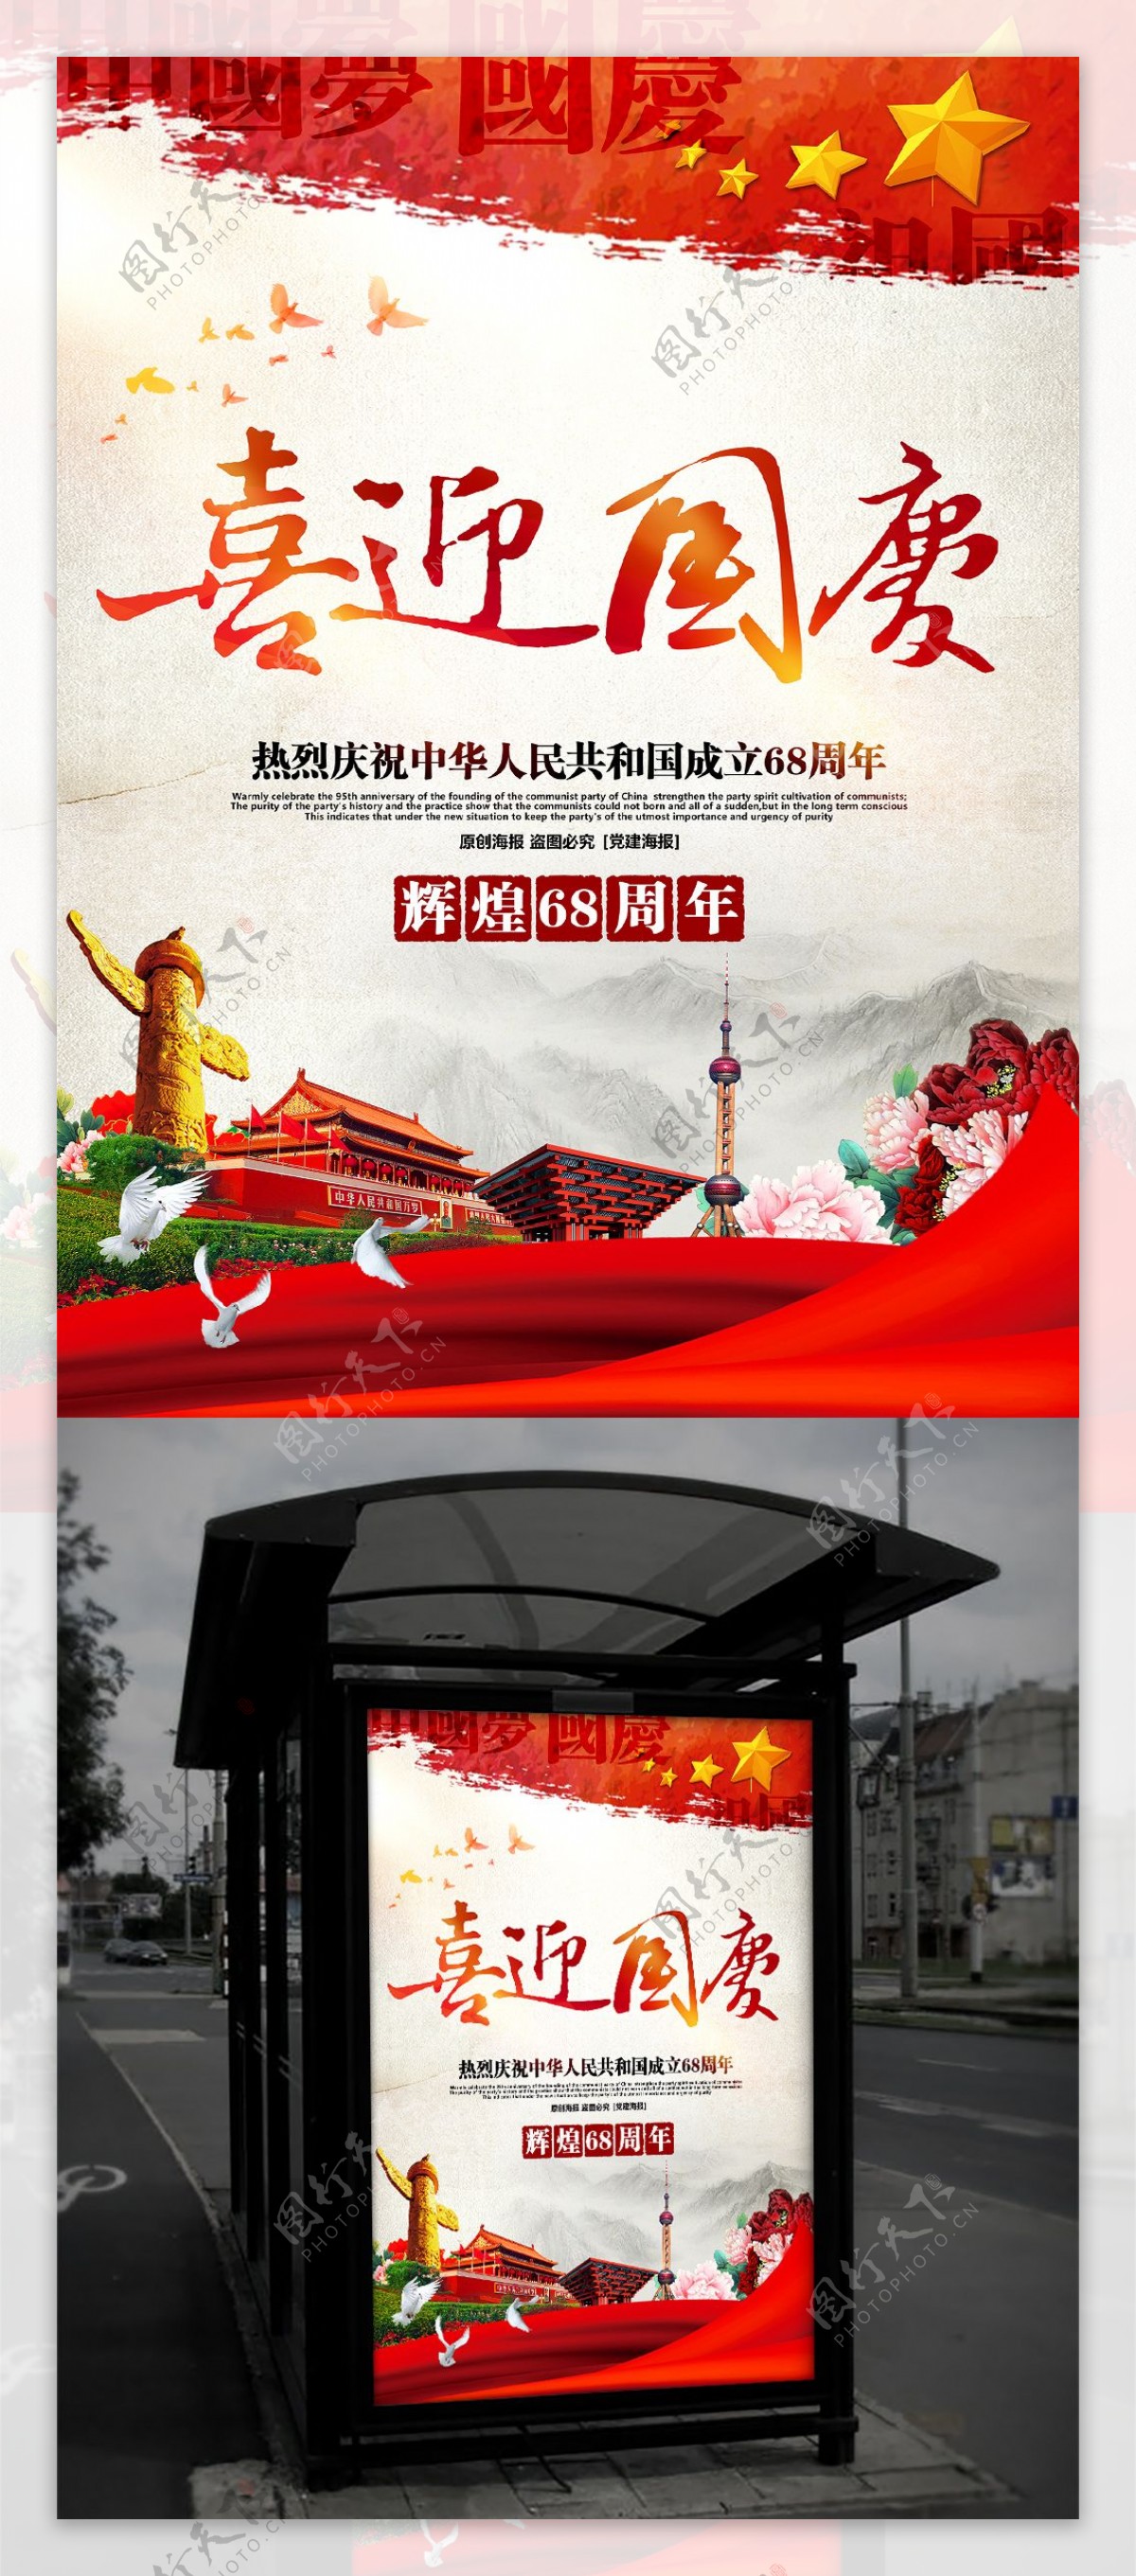 大气精美喜迎国庆国庆68周年主题海报设计